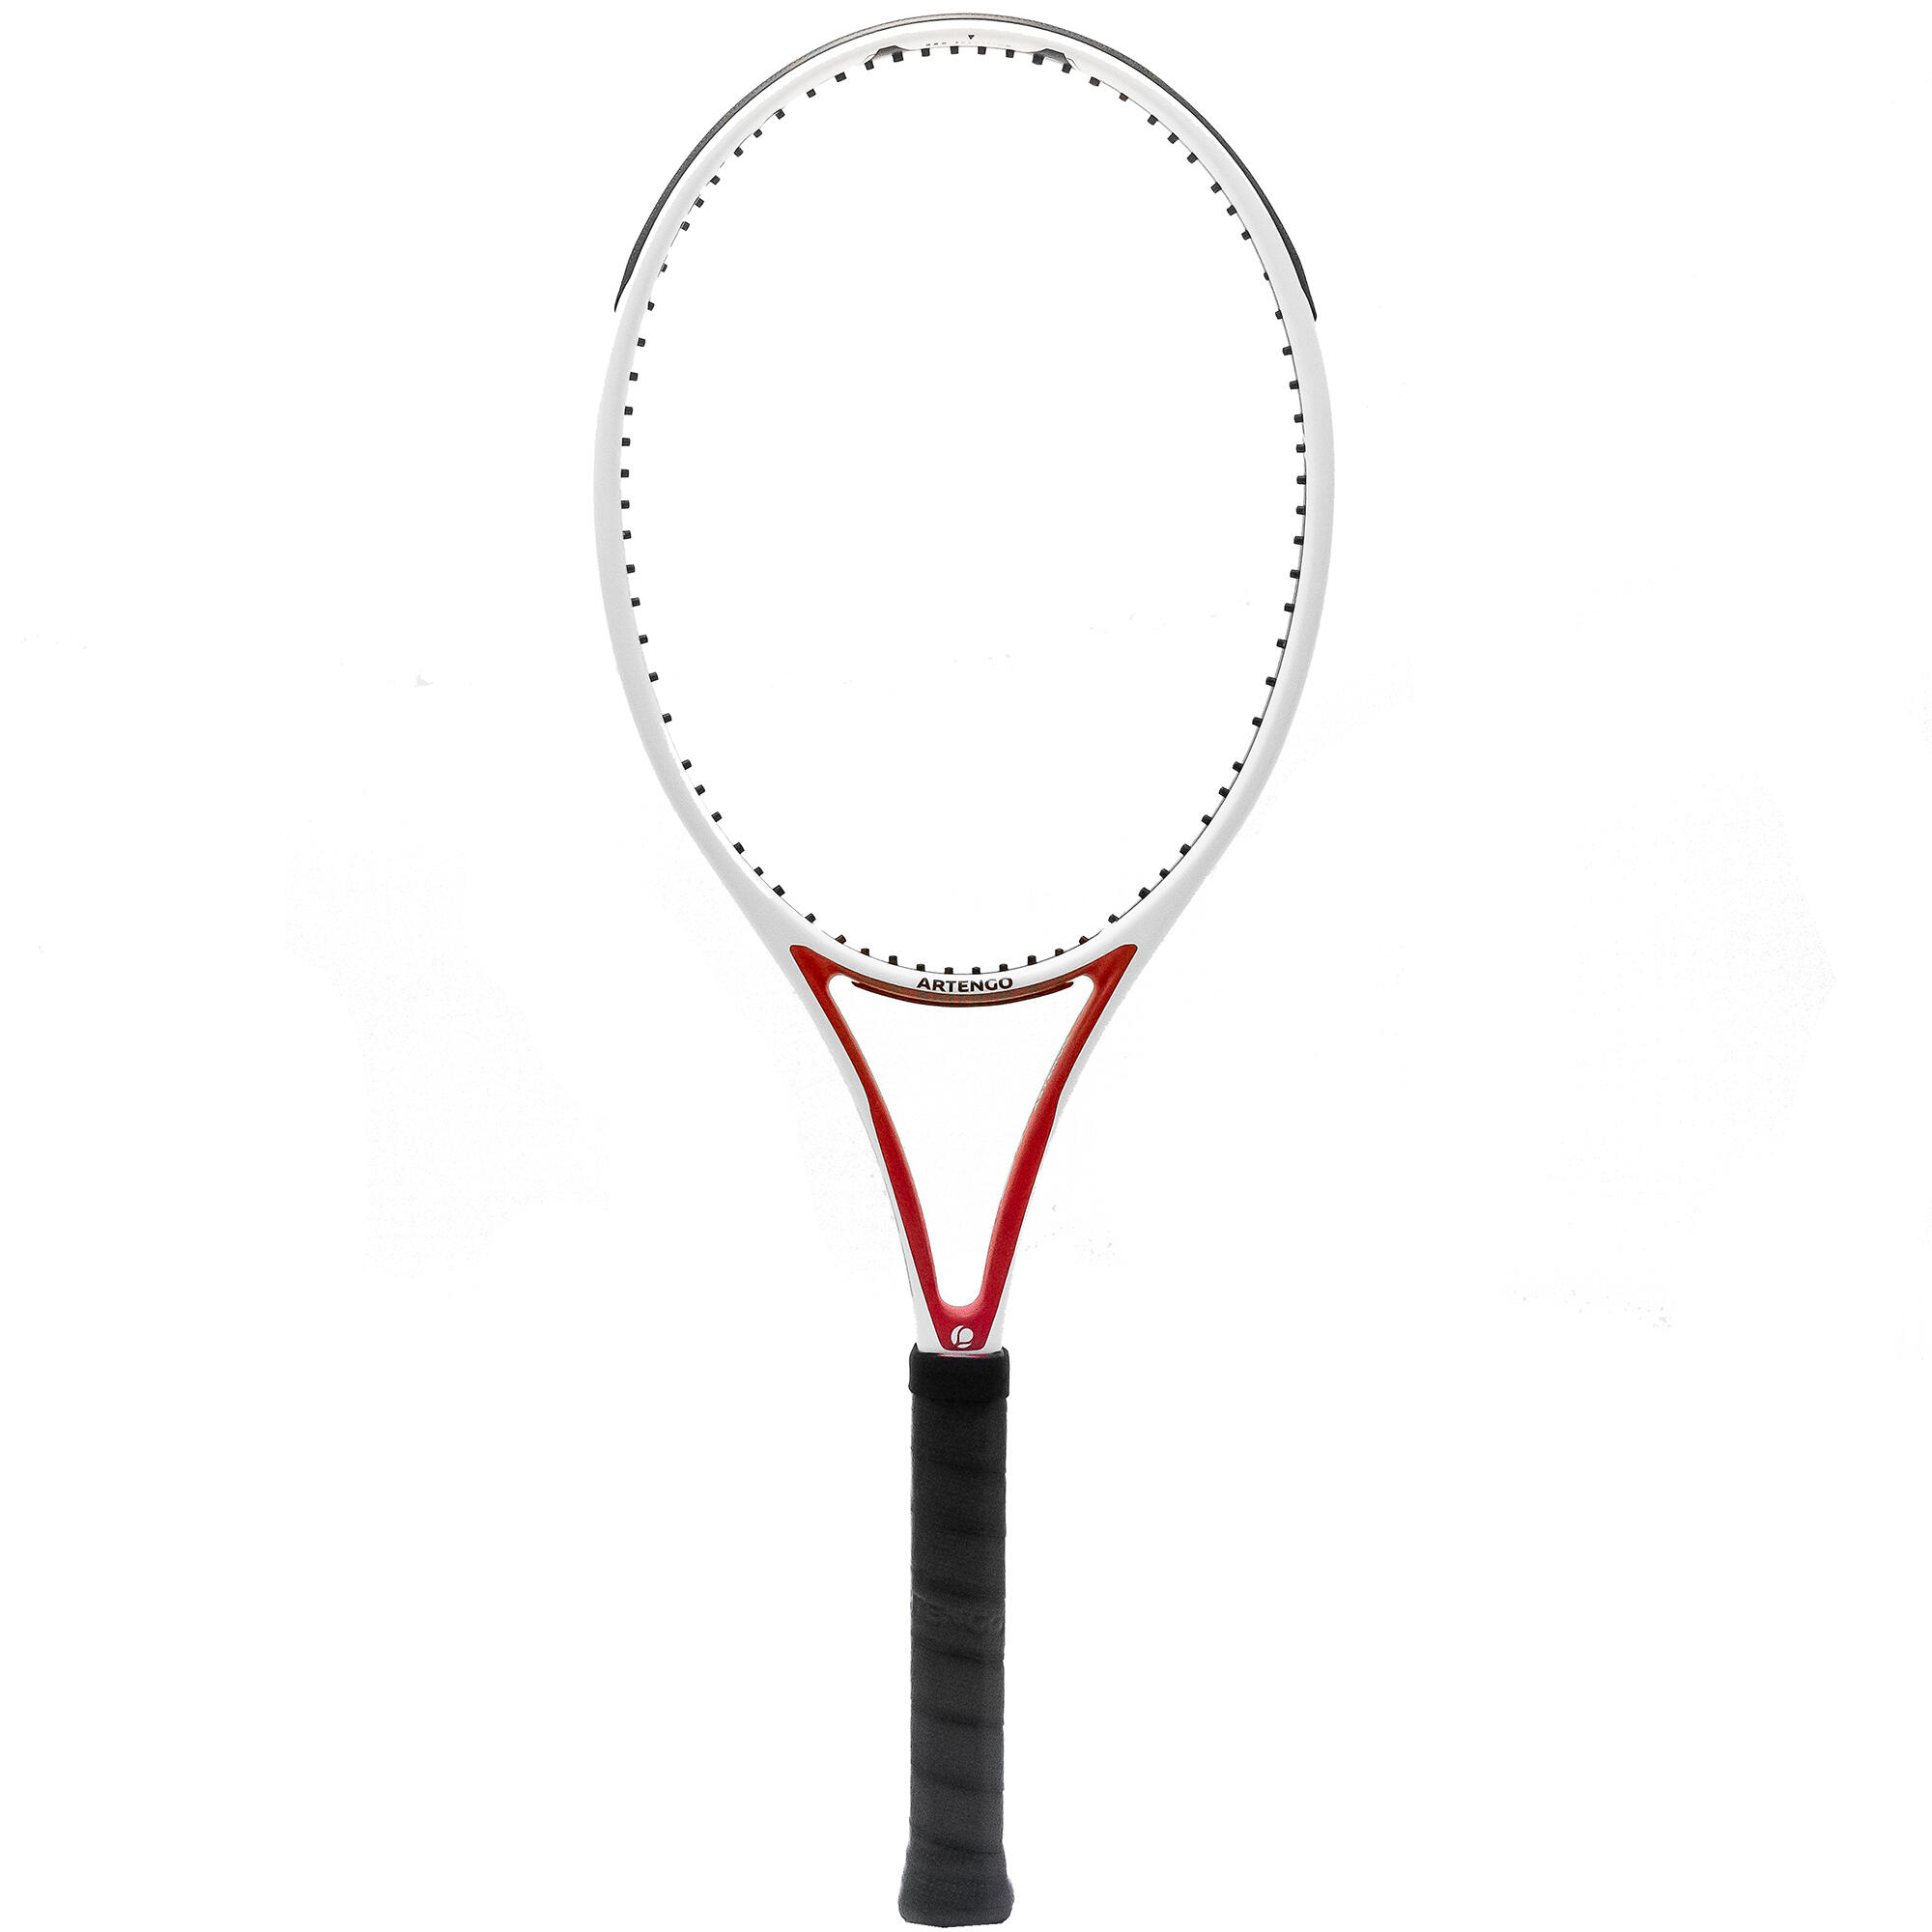 Rachetă Neracordată Tenis TR960 PRECISION Pro 18×20 Alb-Roșu Adulți La Oferta Online ARTENGO imagine La Oferta Online